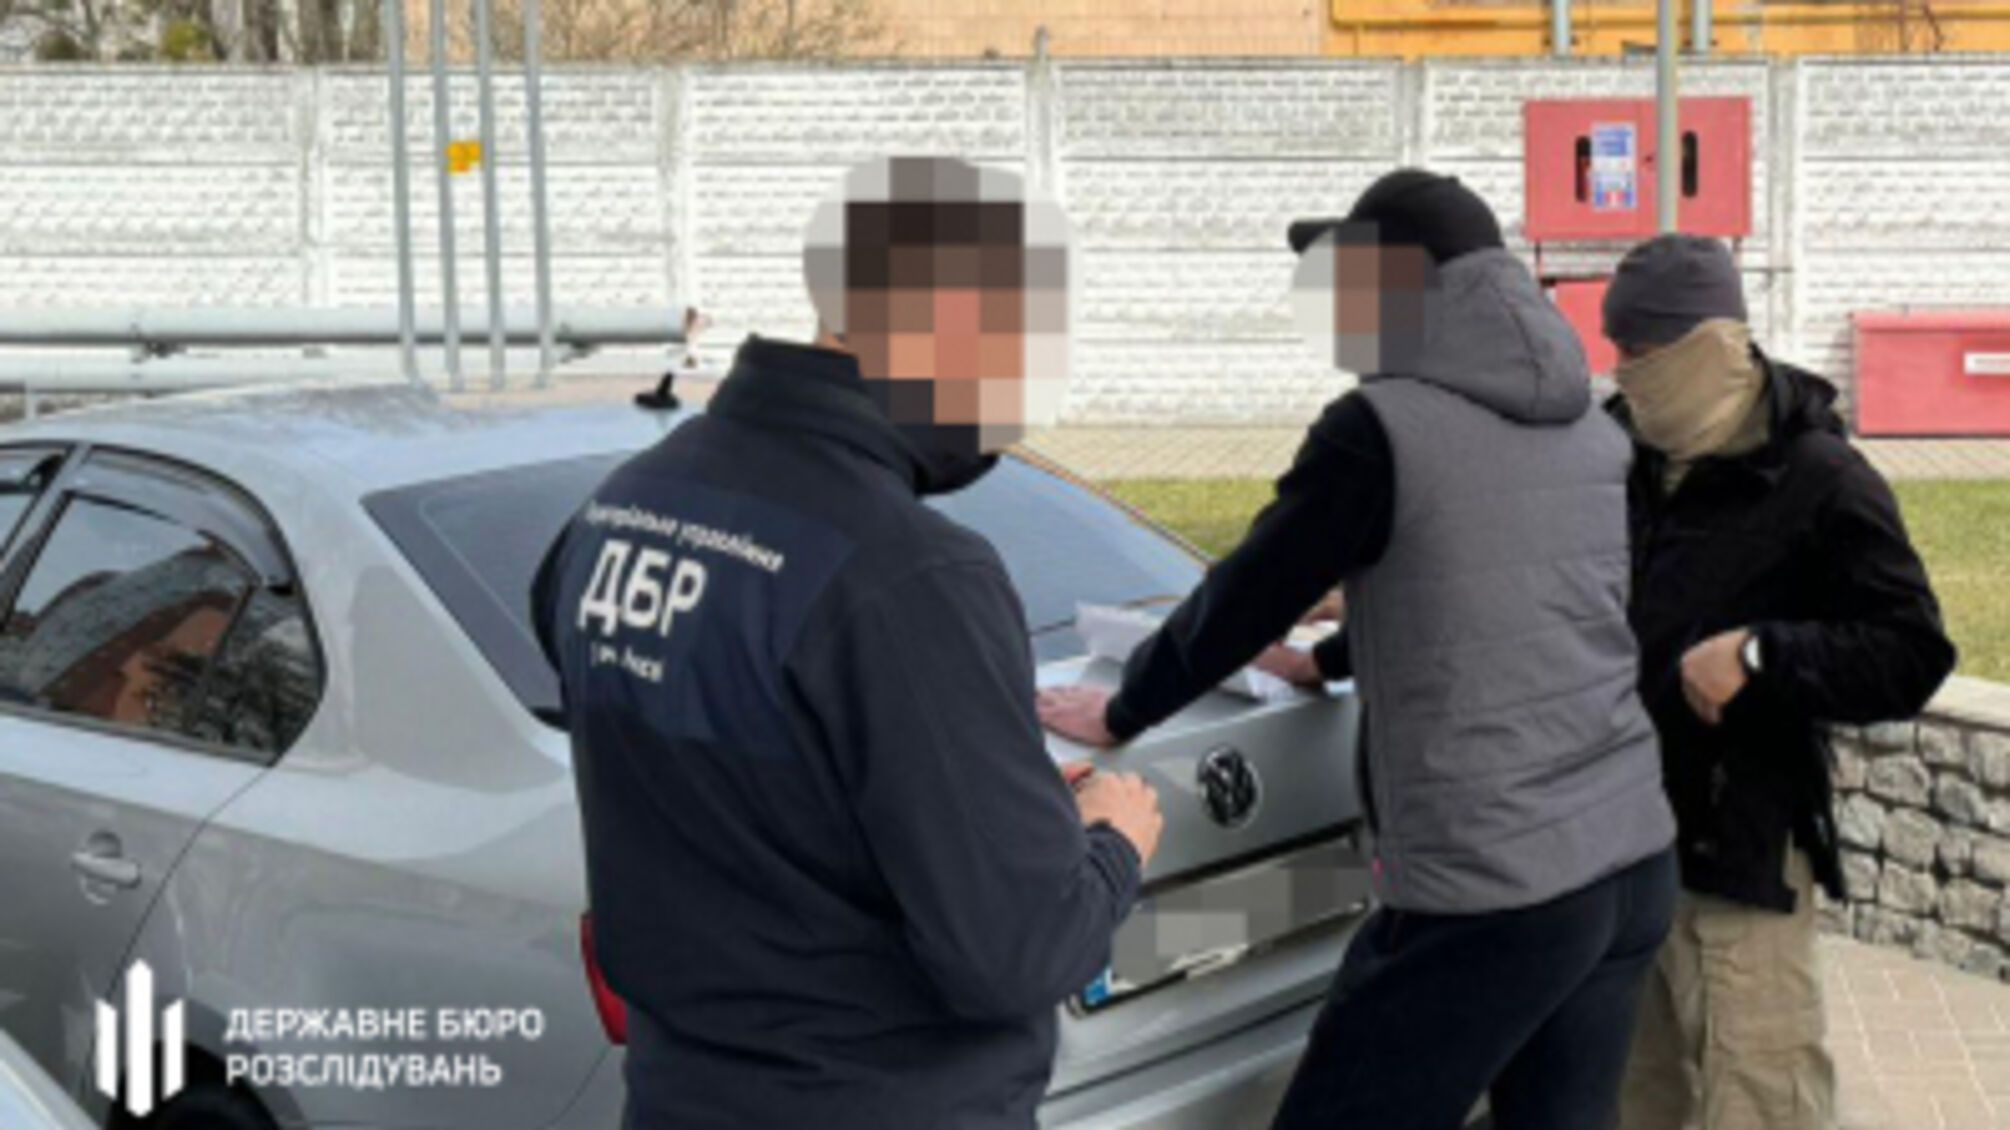 ‚На Киевщине ДБР задержало правоохранителя на получении взятки в $15 000 за «отмазку» от прохождения службы